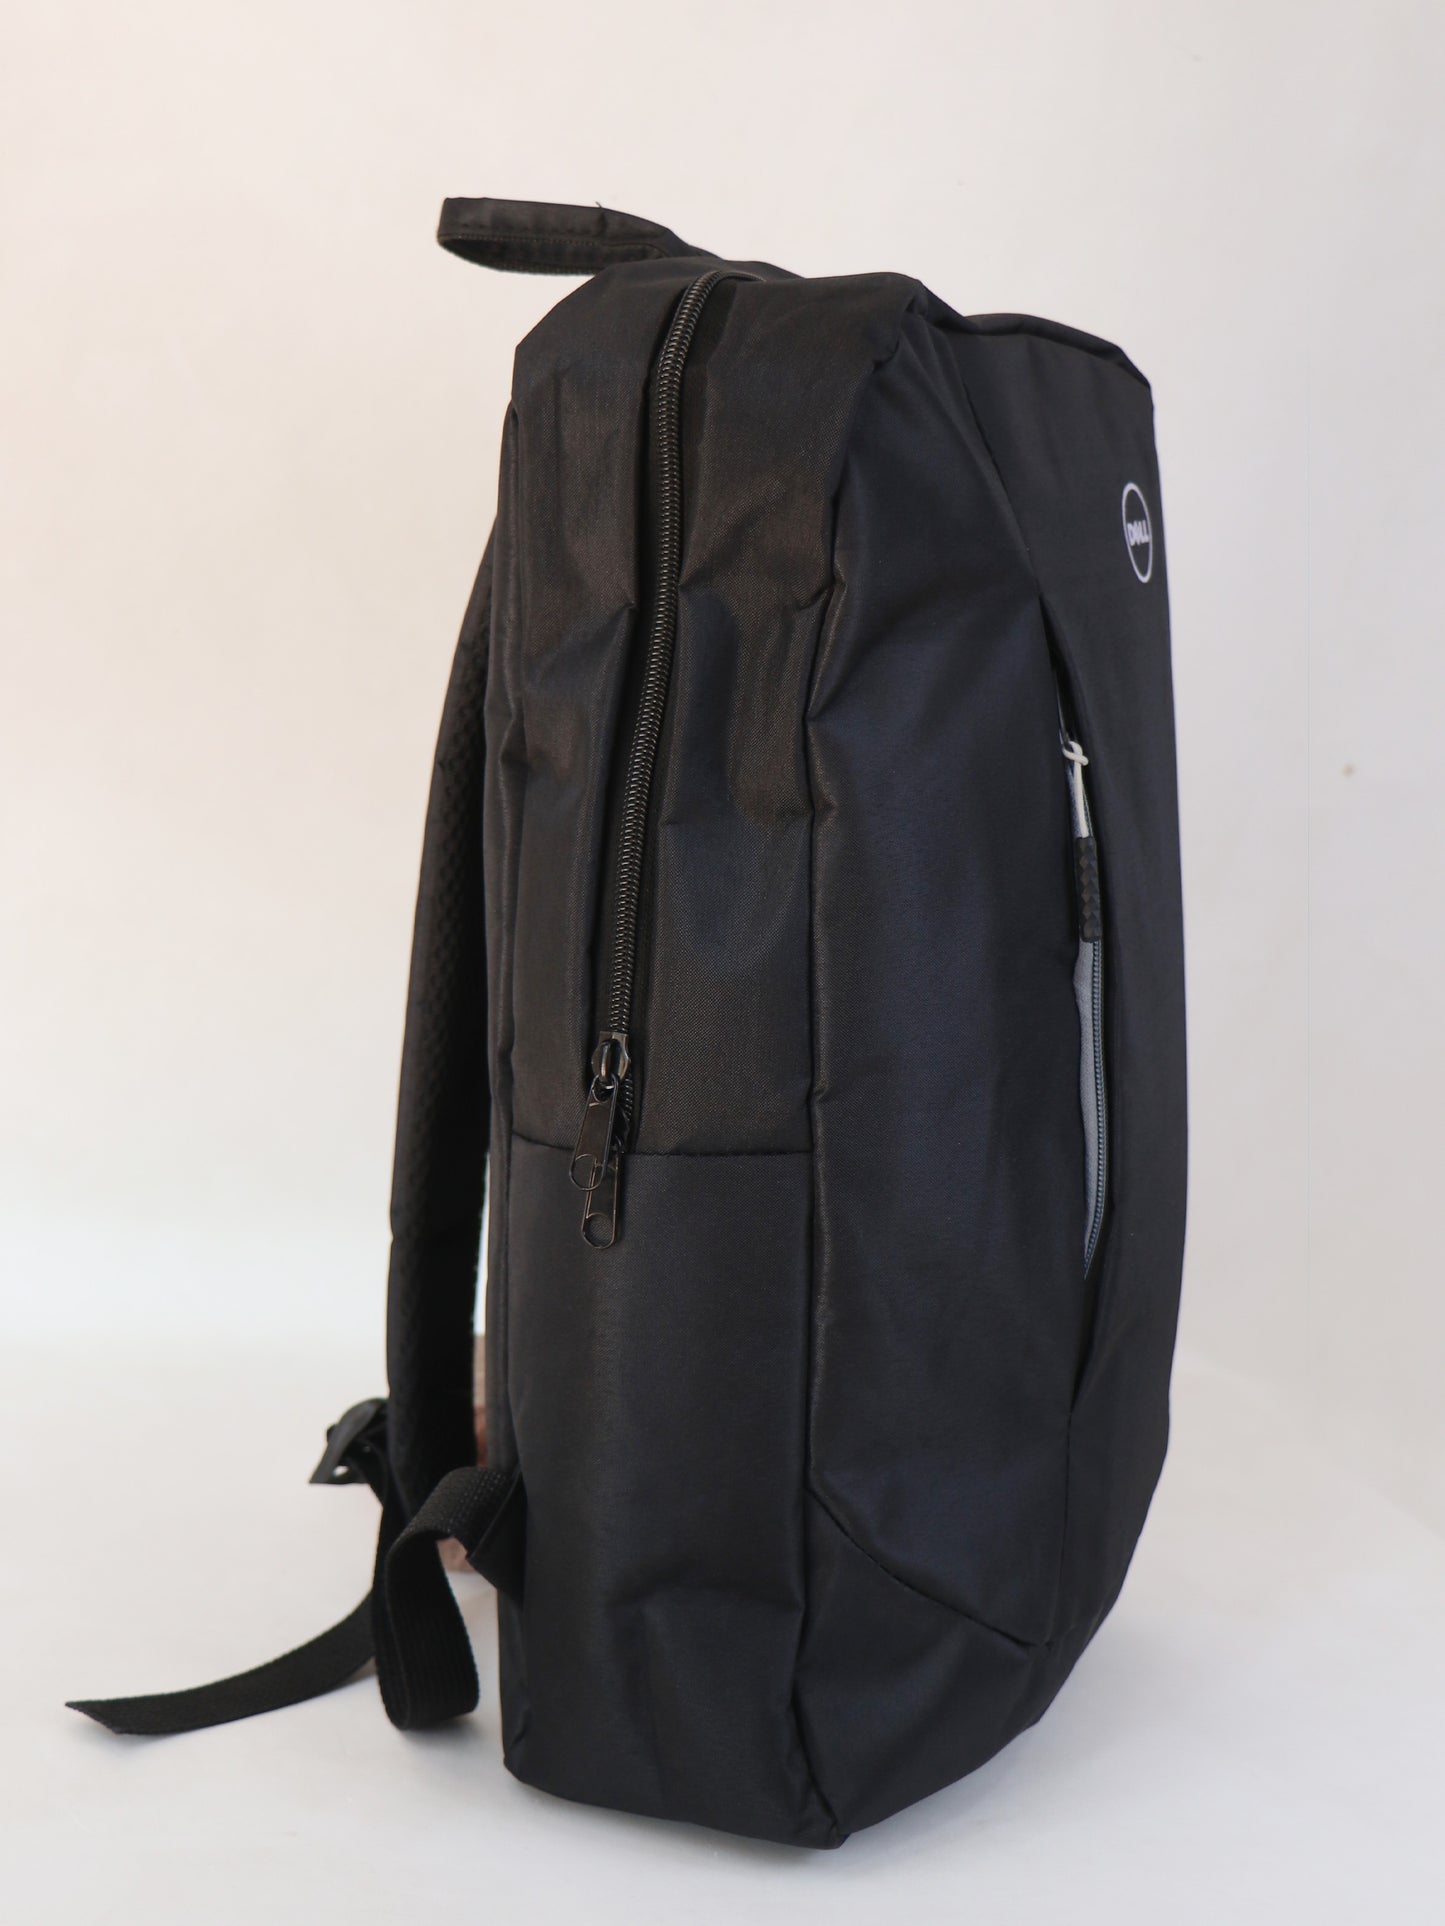 LB03 Dell Laptop Bag Value Backpack Black